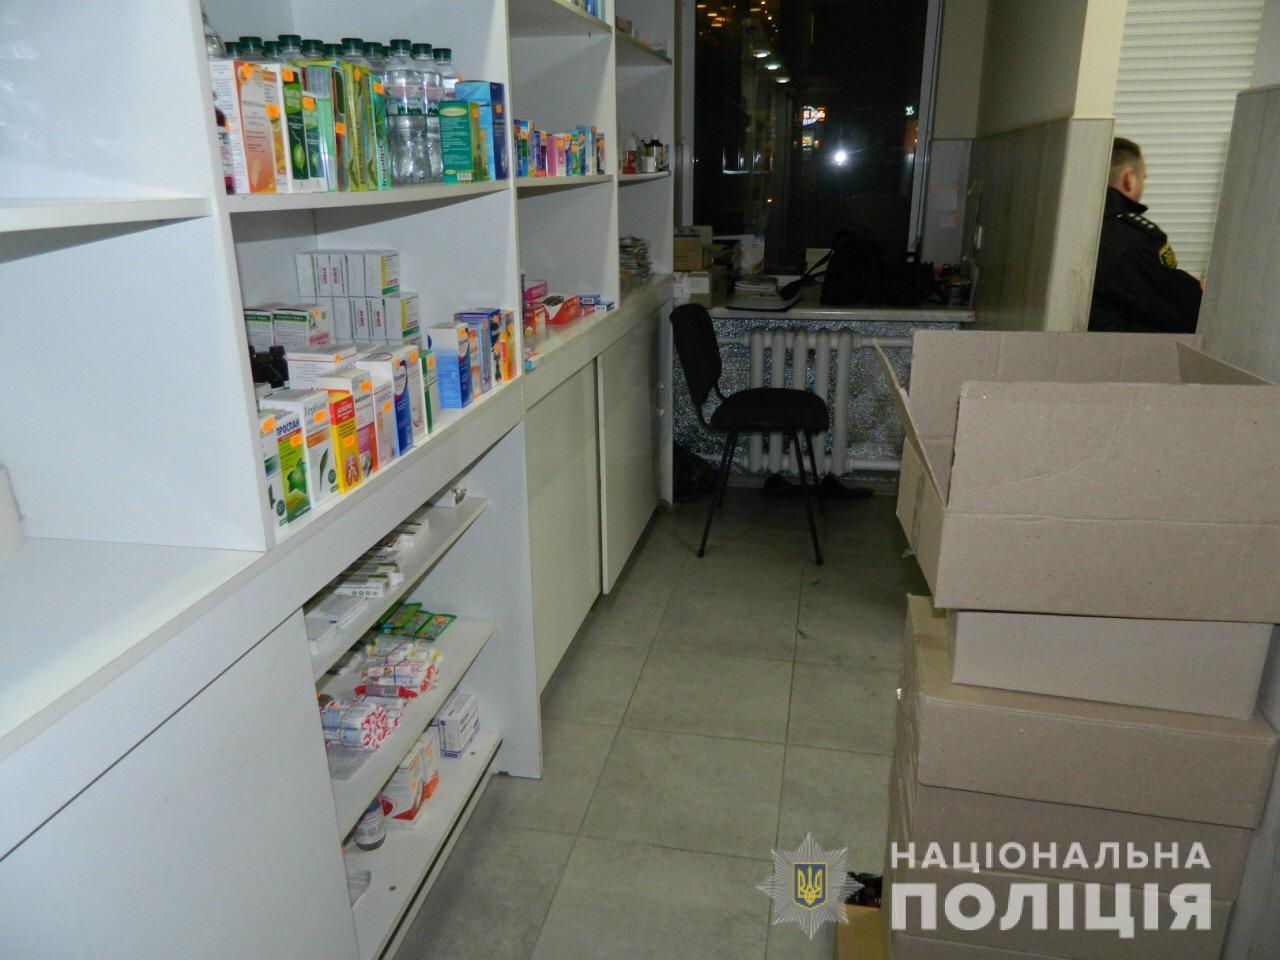 Запорожские полицейские сообщили подробности обысков в аптеке